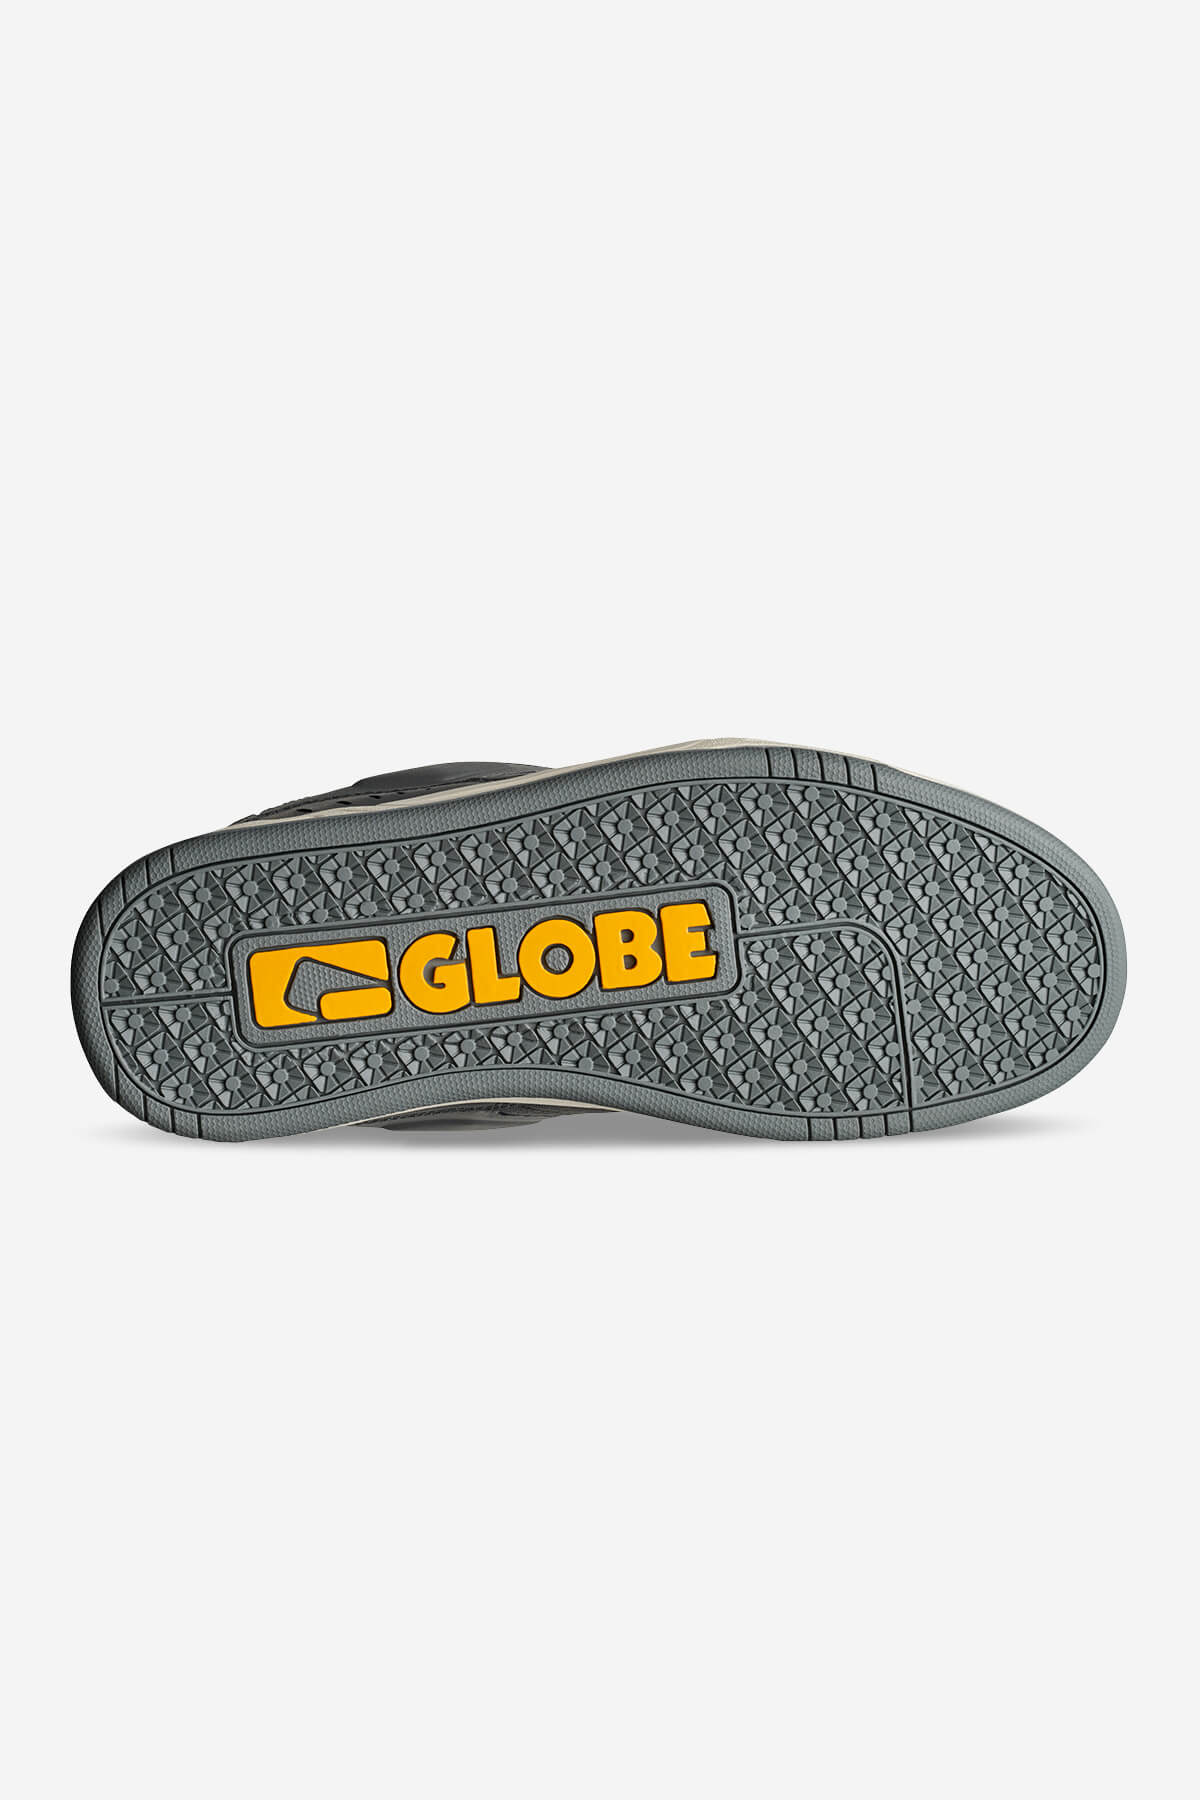 Globe - Fusion - Plomo/Antico - skateboard Zapatos